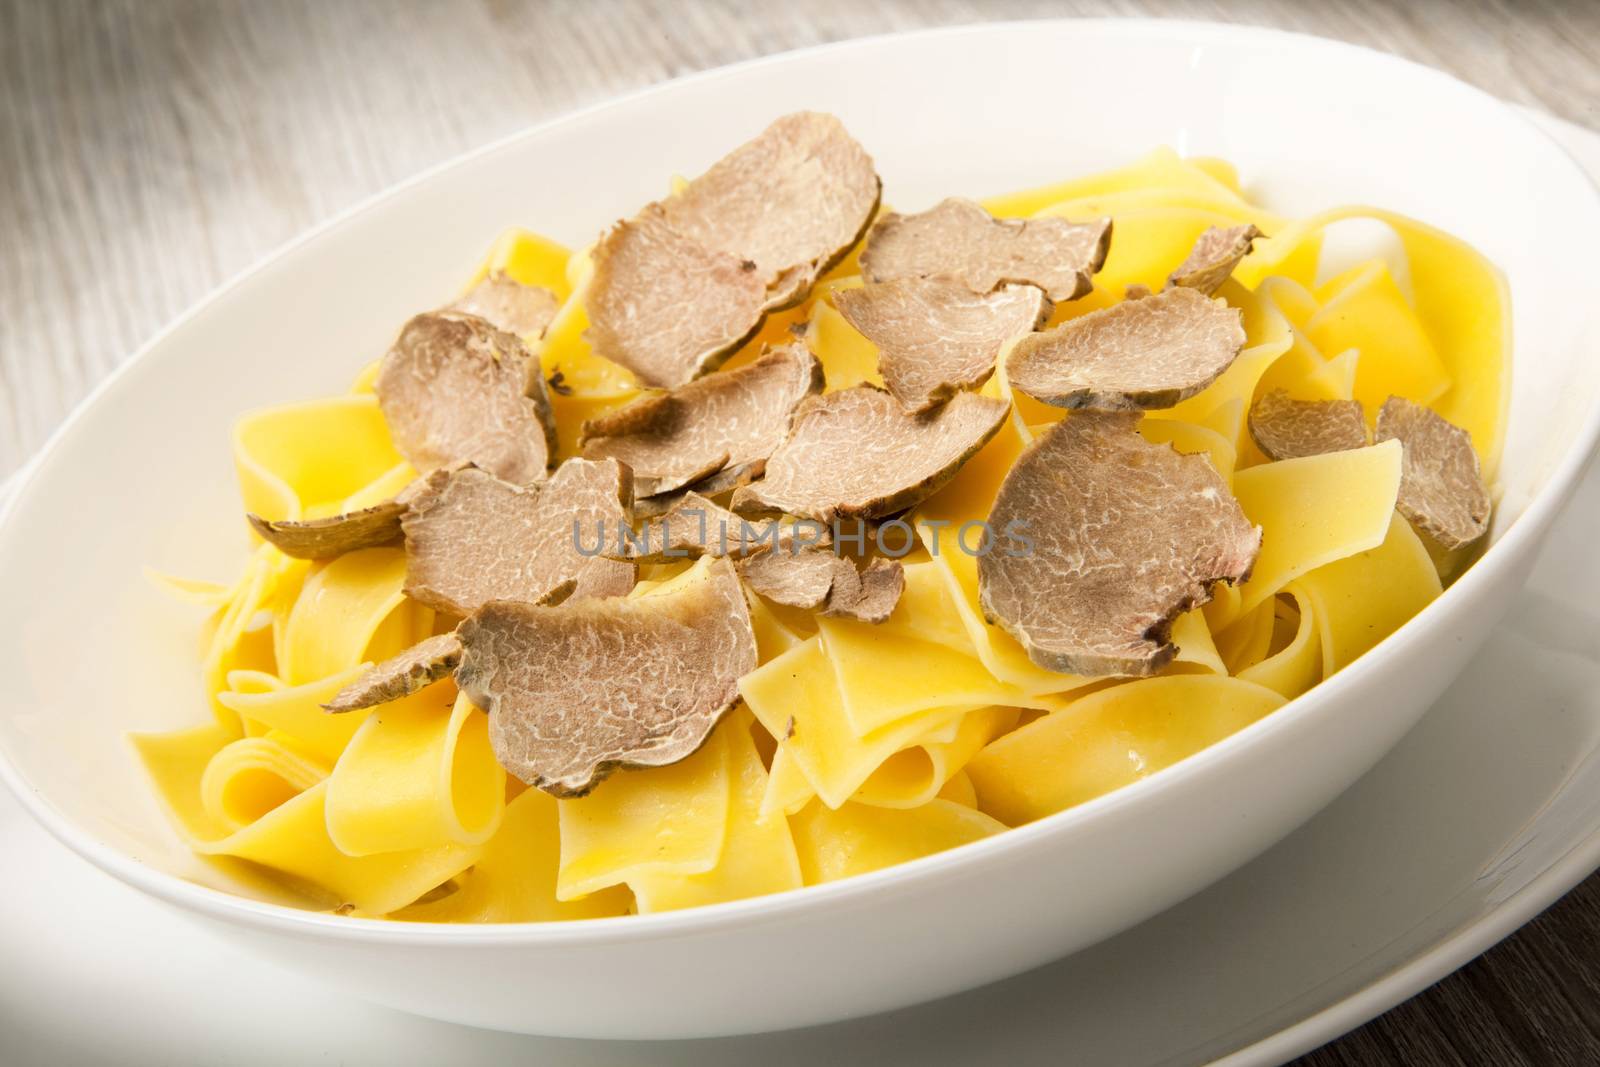 original italian tagliatelle with truffle